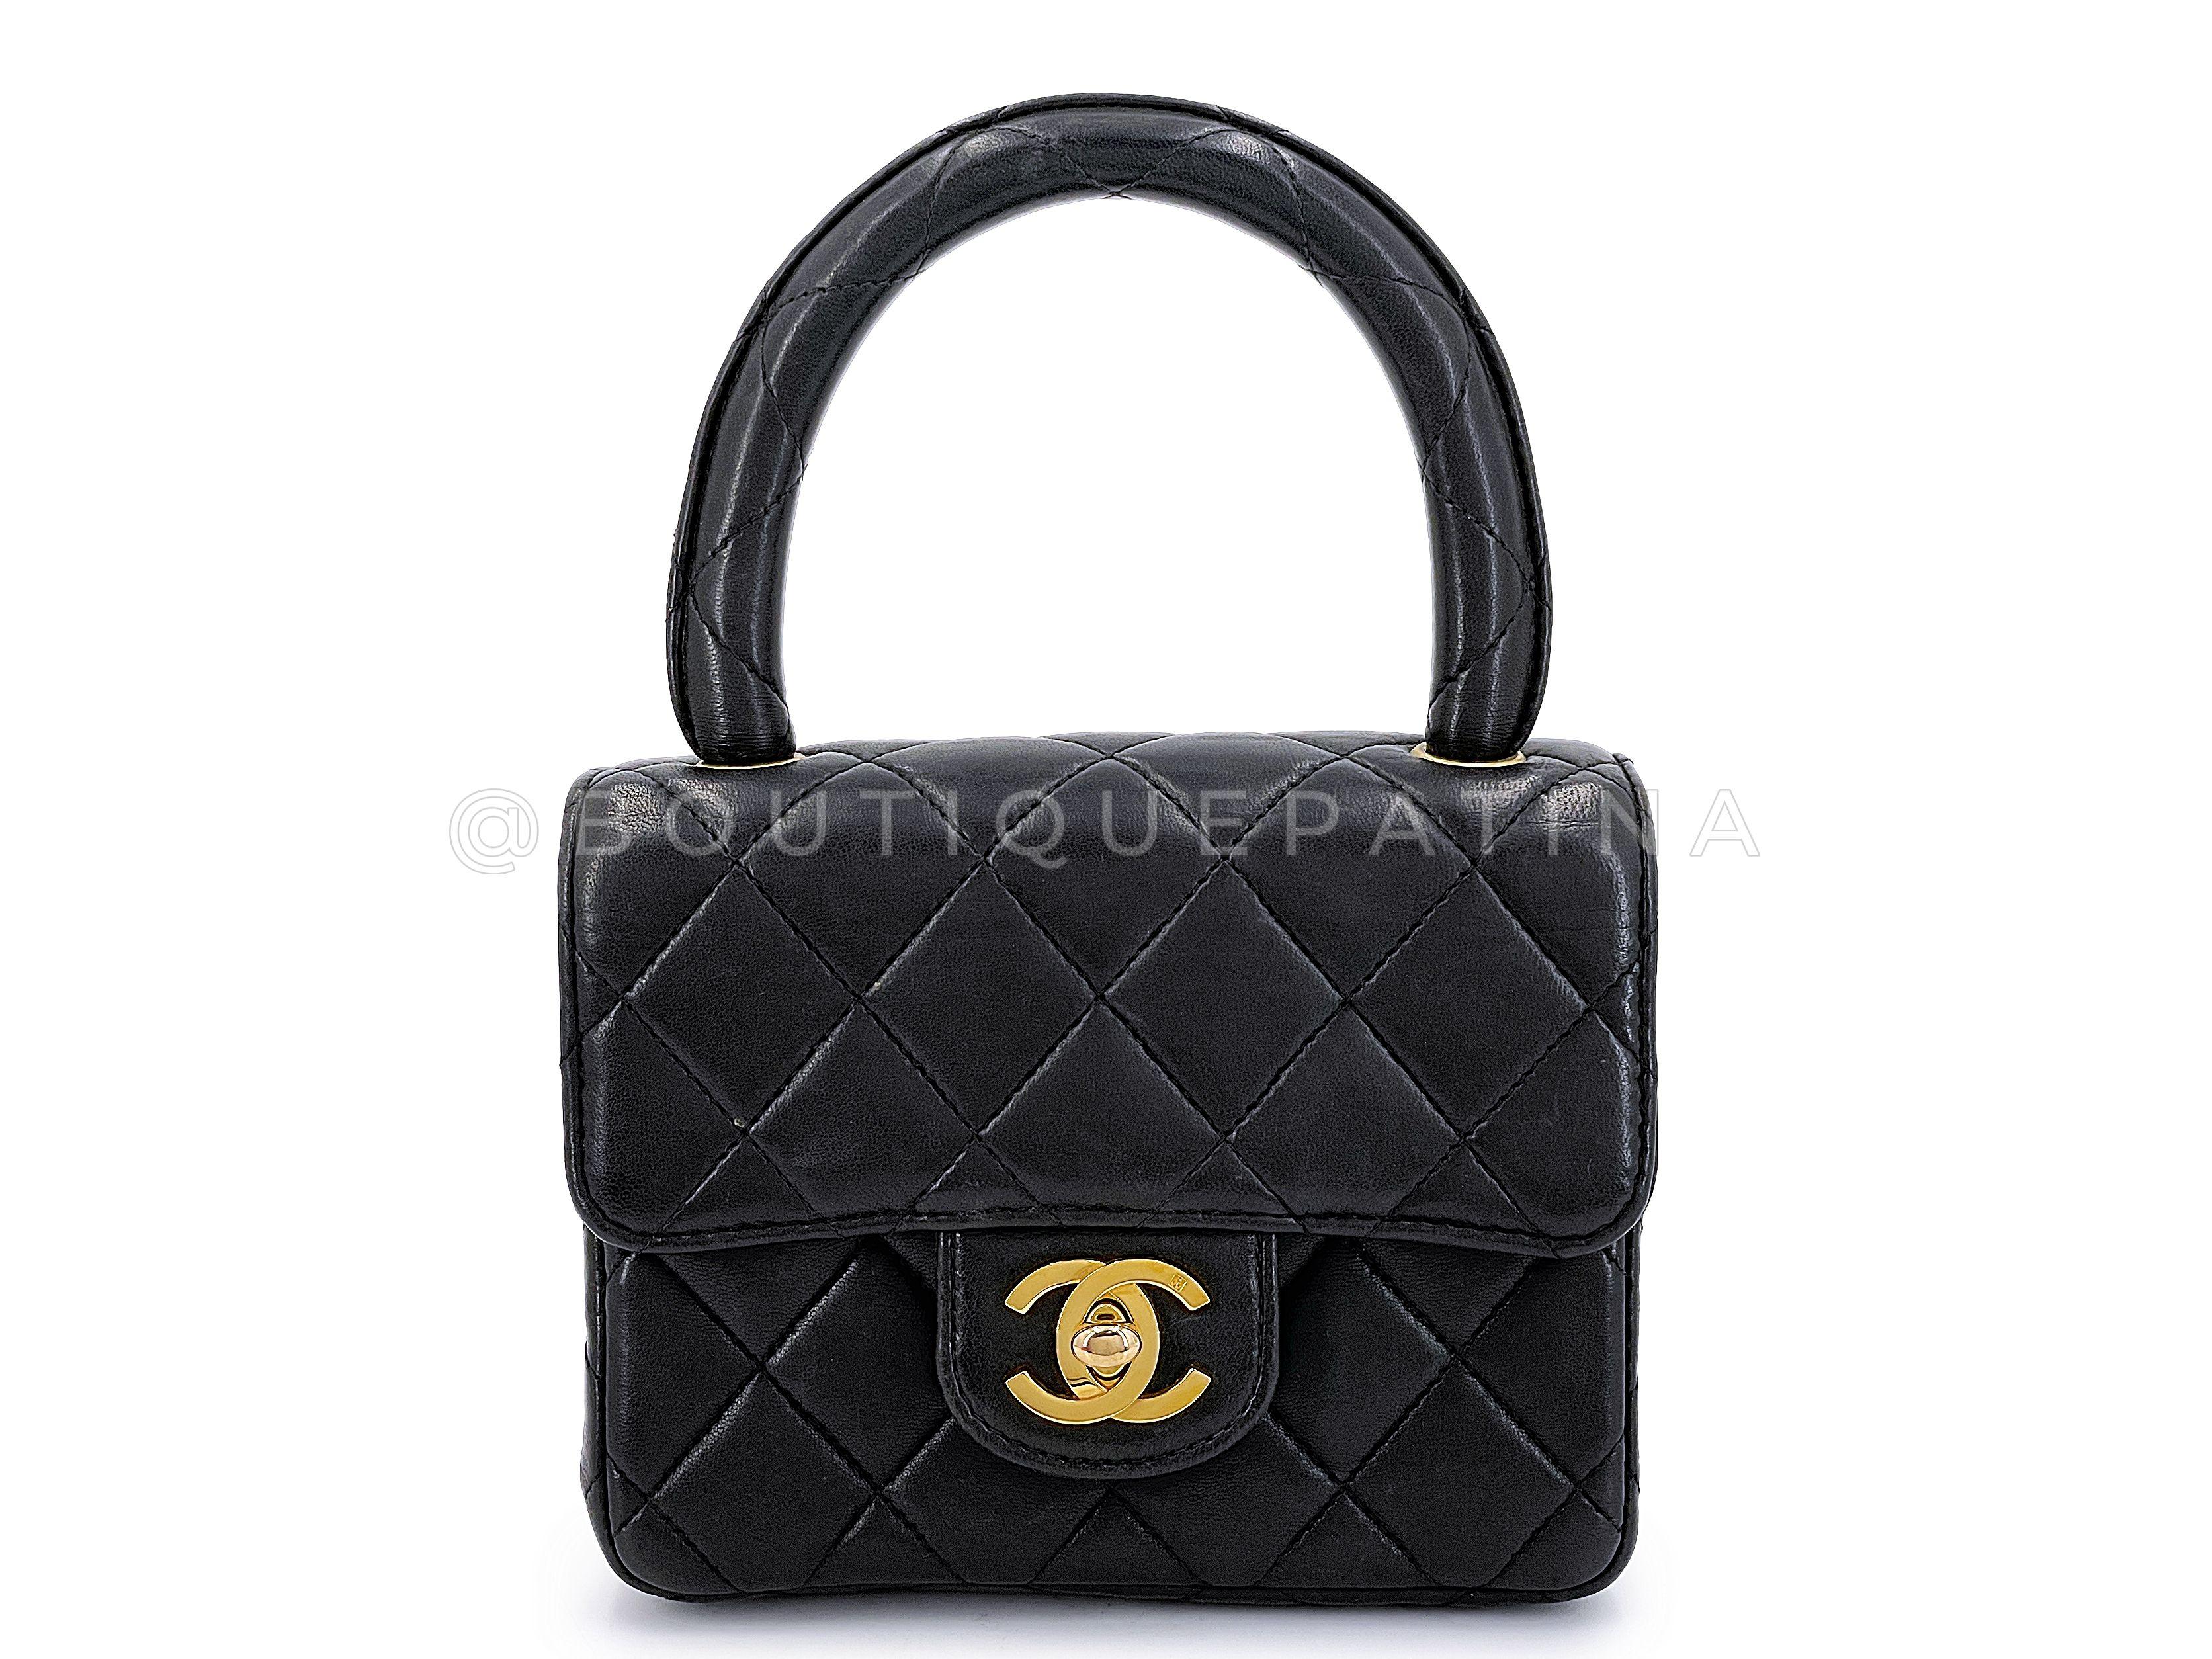 Chanel 1994 Vintage Parent Child Bag Kelly Flap Set Black 24k GHW 66669 For Sale 9